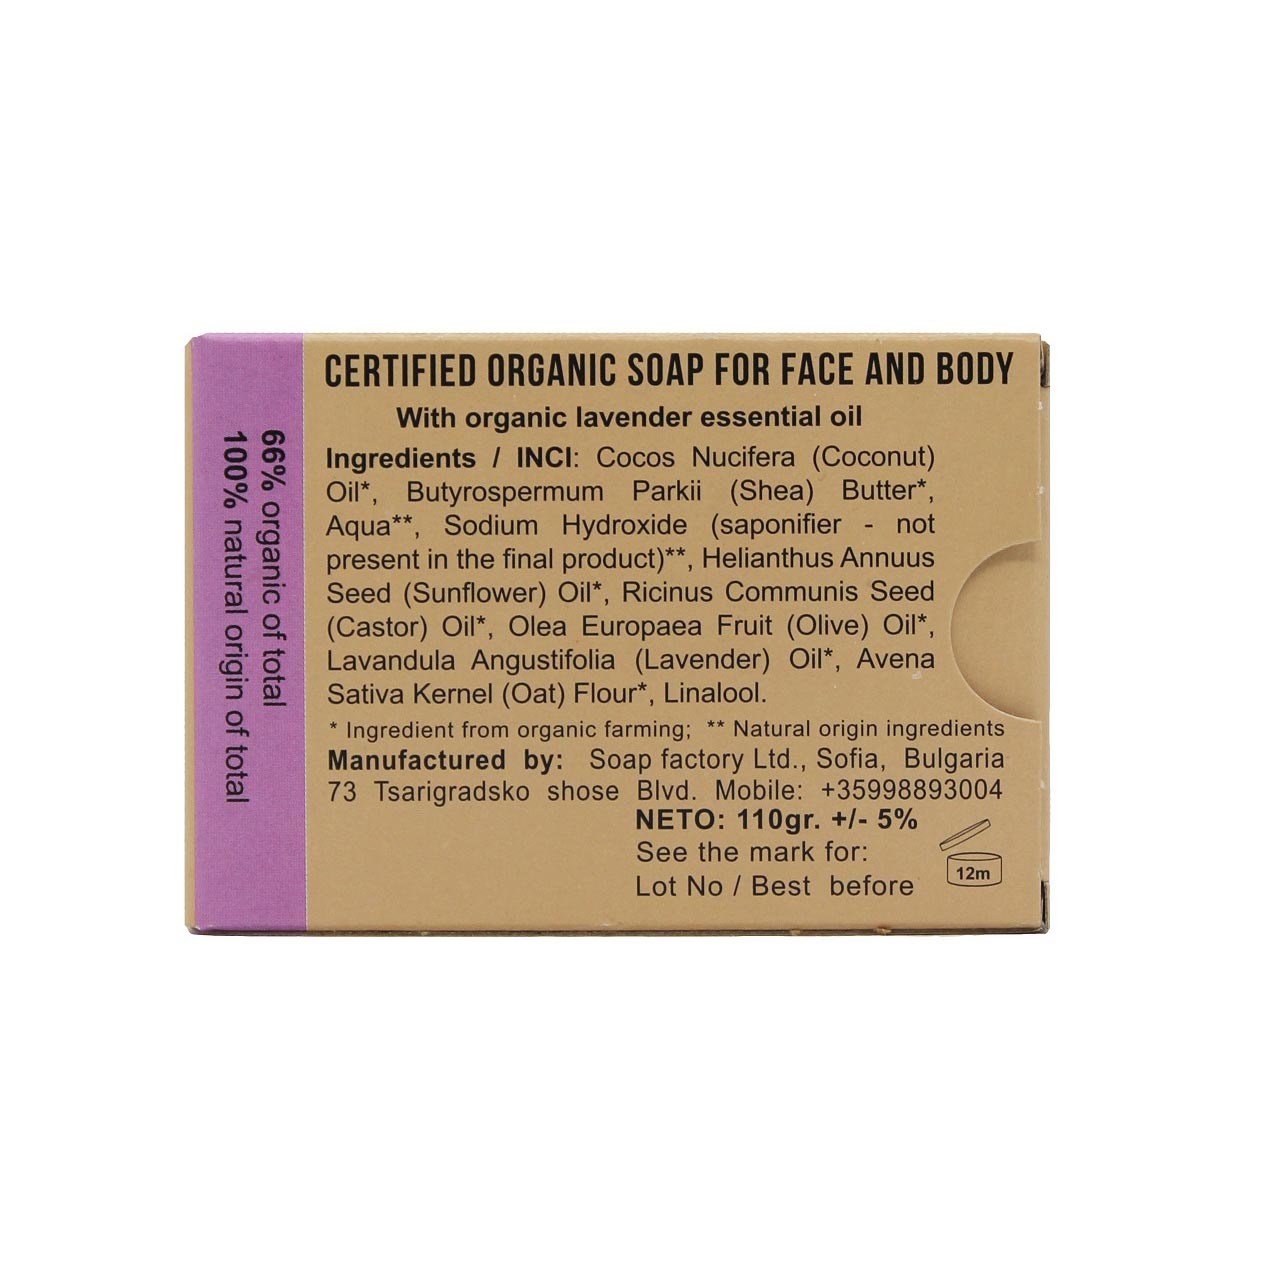 Soapfactory Lavendel sæbebar - mod acne, hud irritation og eksem